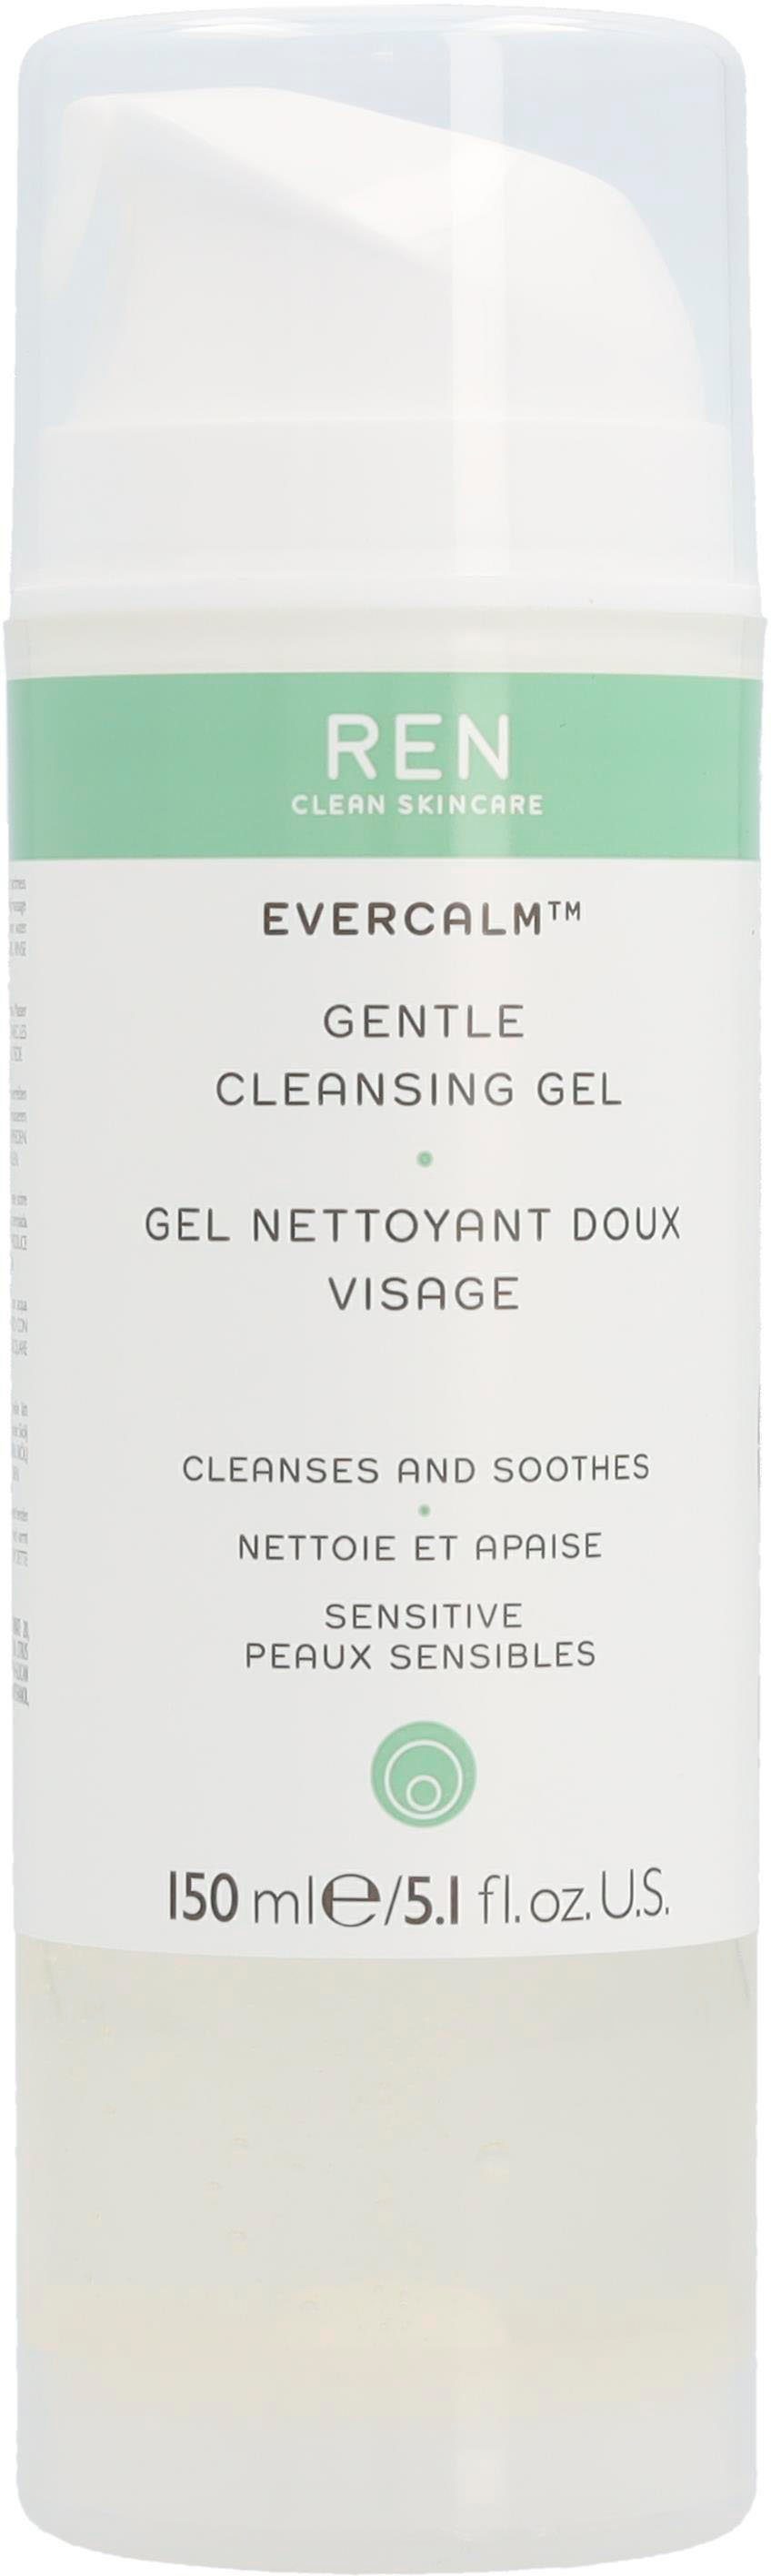 Ren Gesichtsreinigungsgel Evercalm Gentle Cleansing Gel | Reinigungsgele